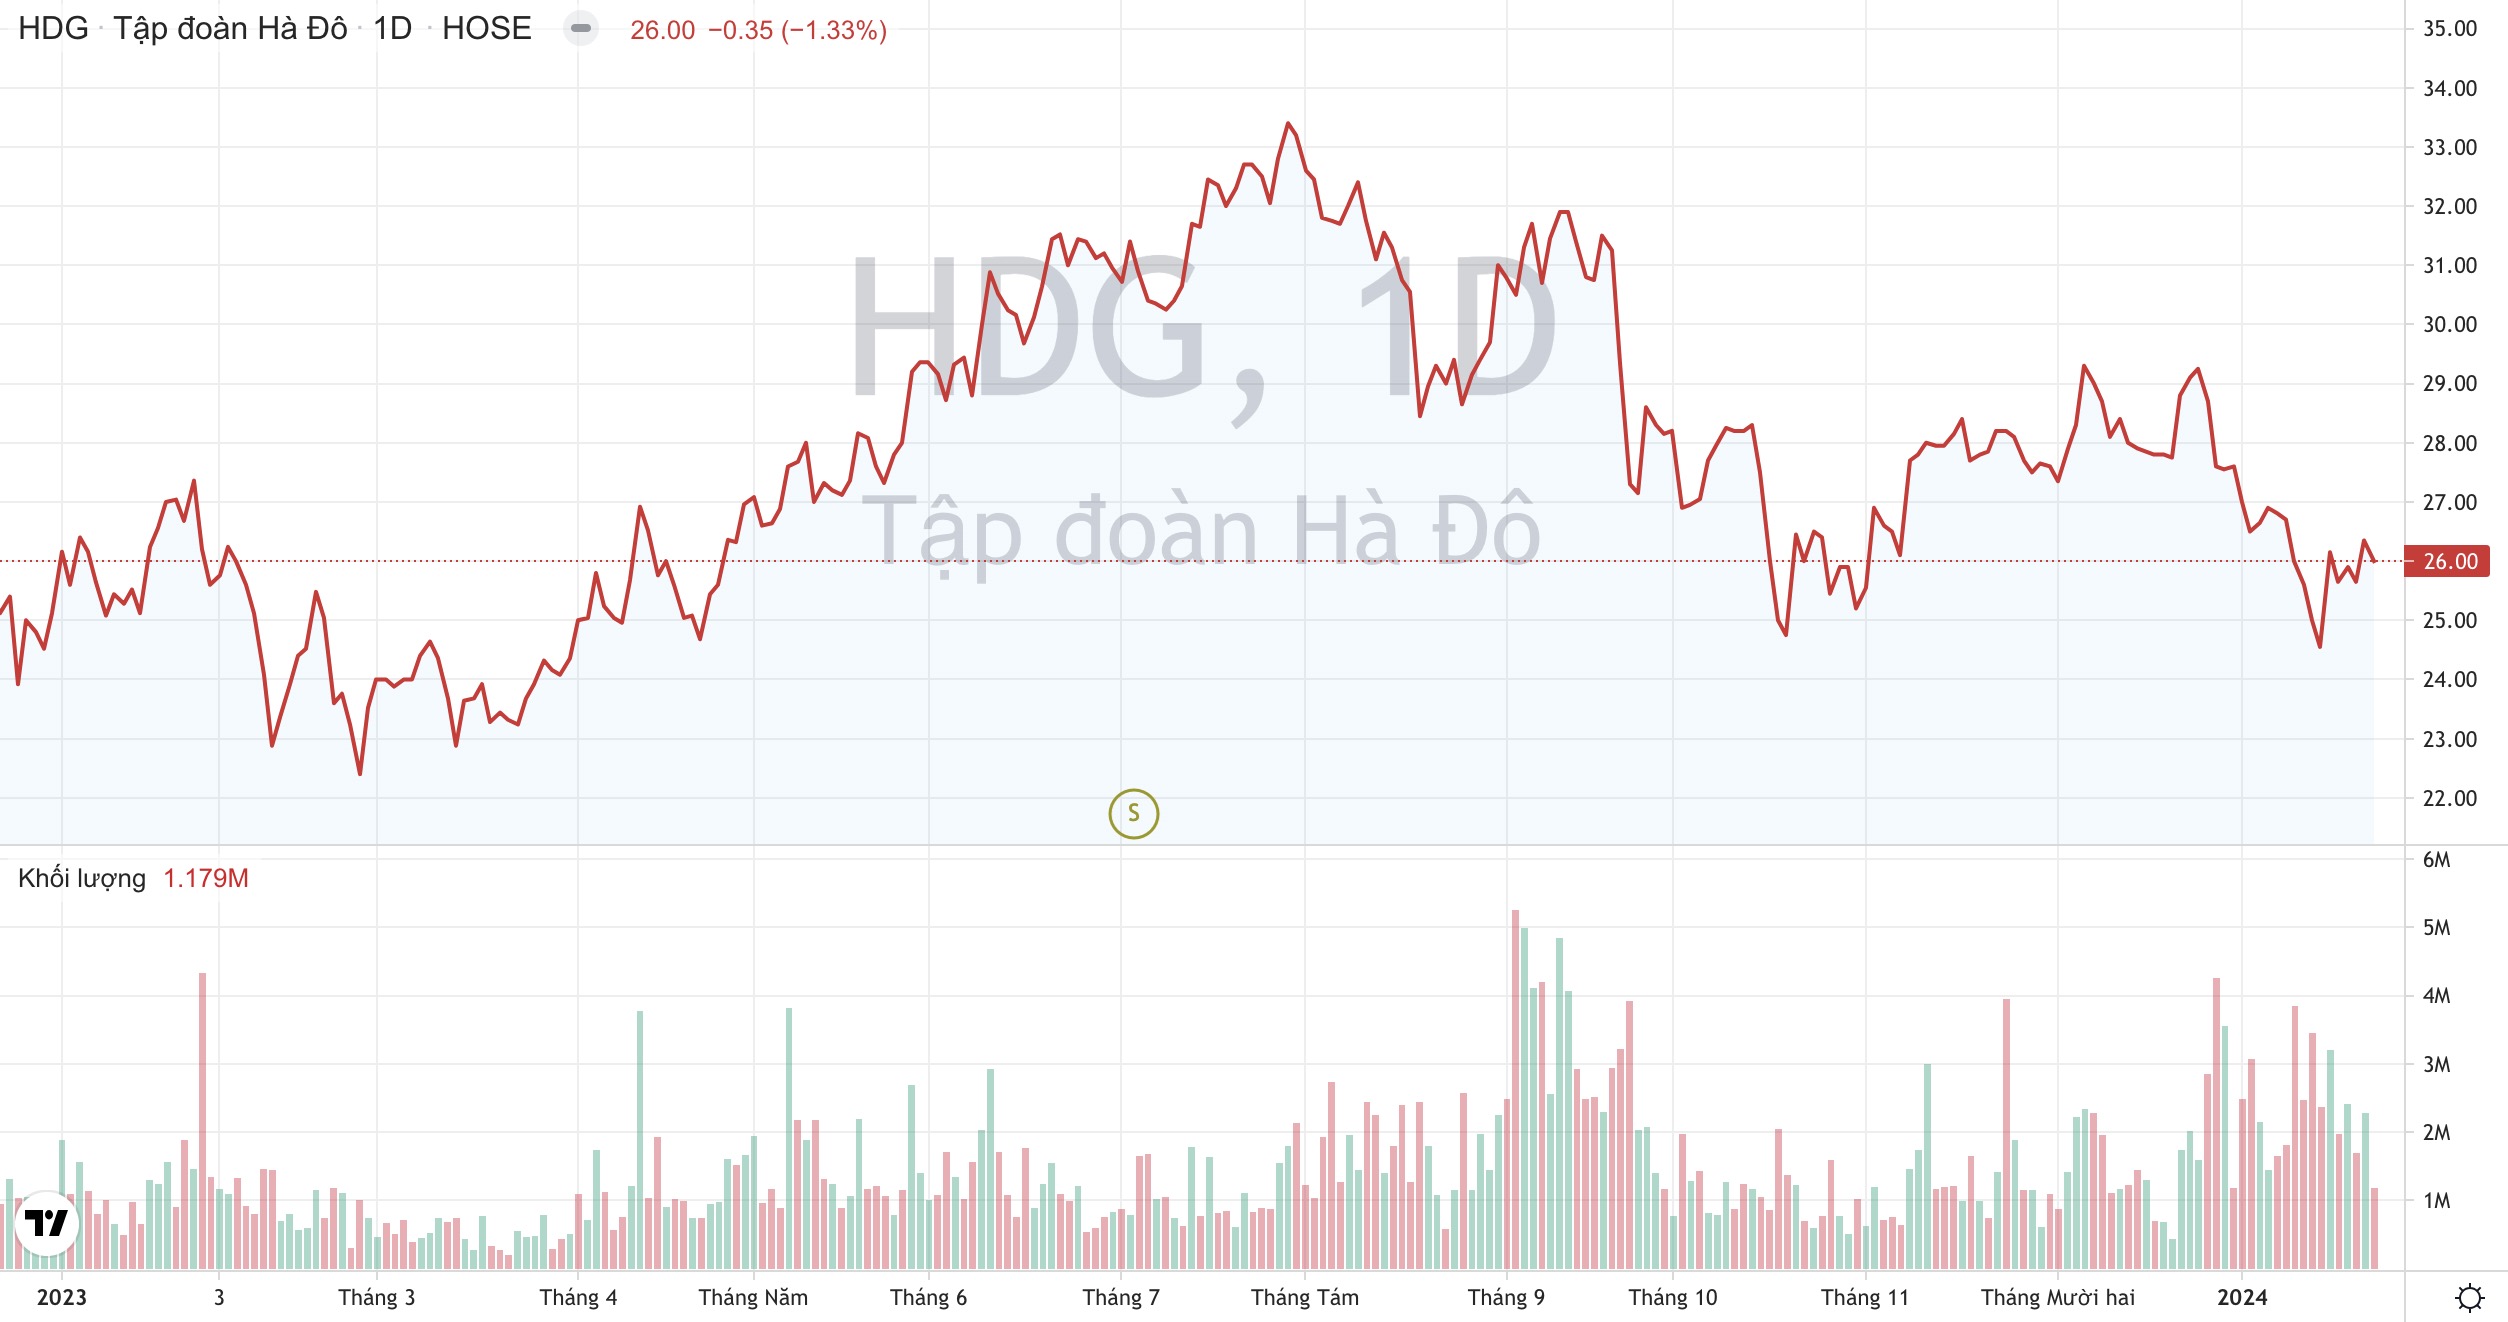 Cổ phiếu HDG Tập đoàn Hà Đô